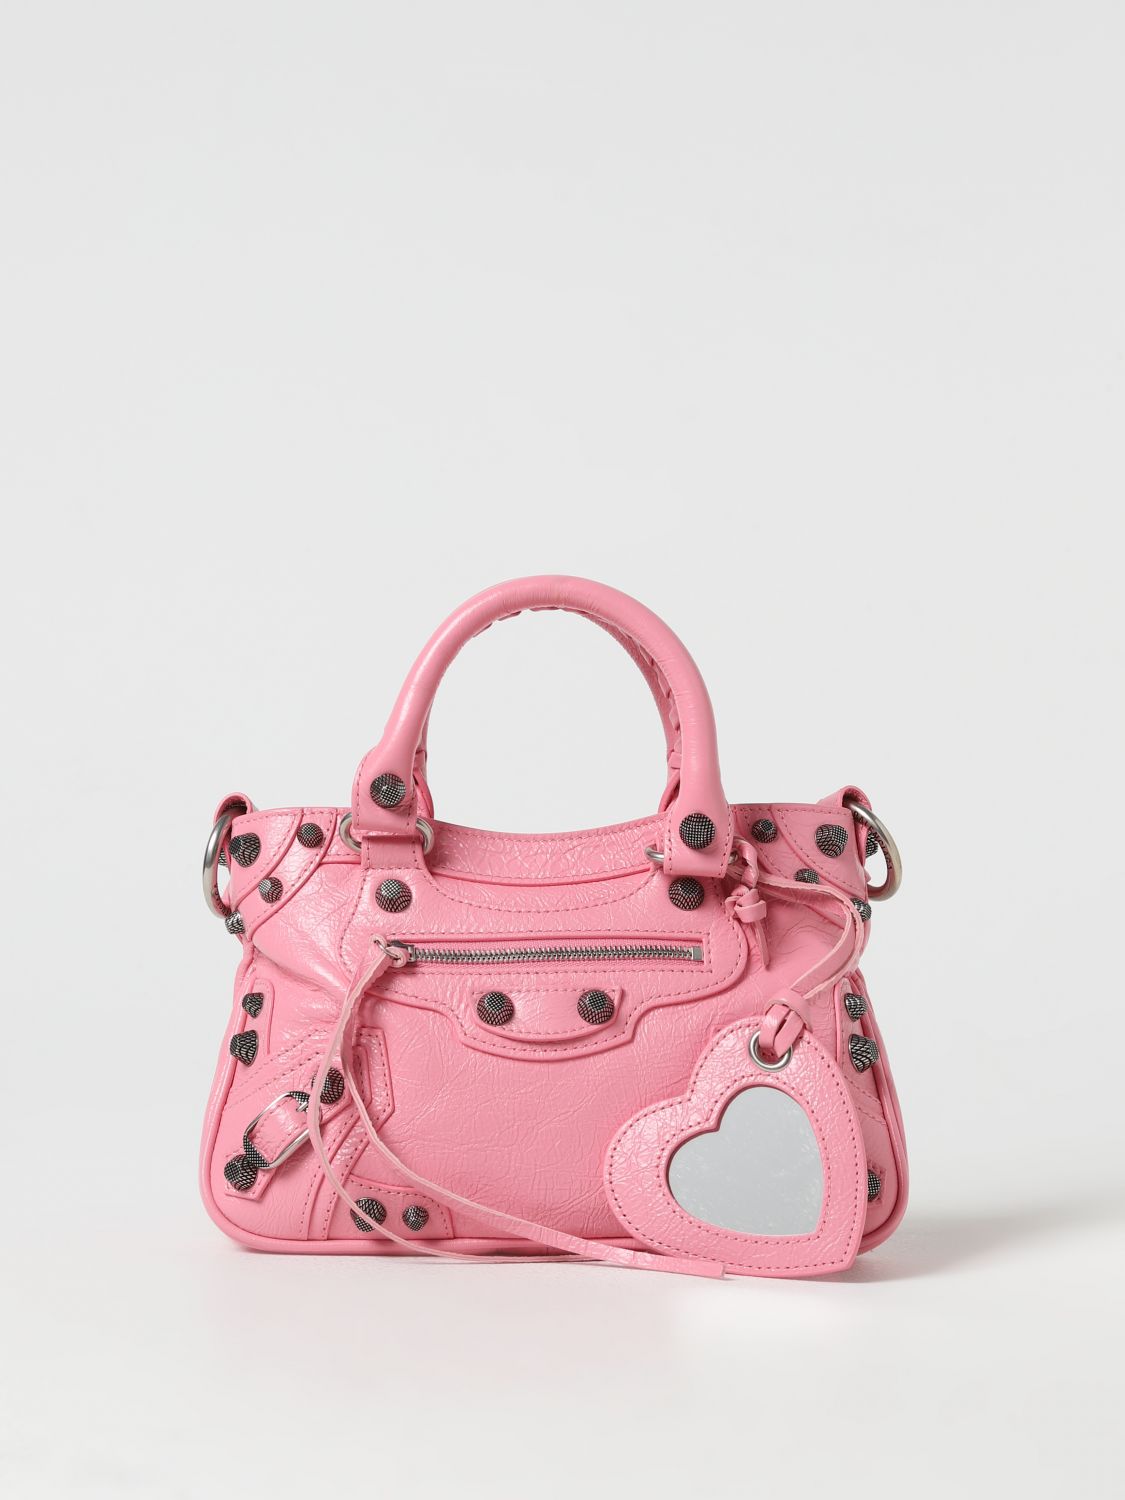 BALENCIAGA: Neo Cagole S bag in leather - Pink | Balenciaga handbag ...